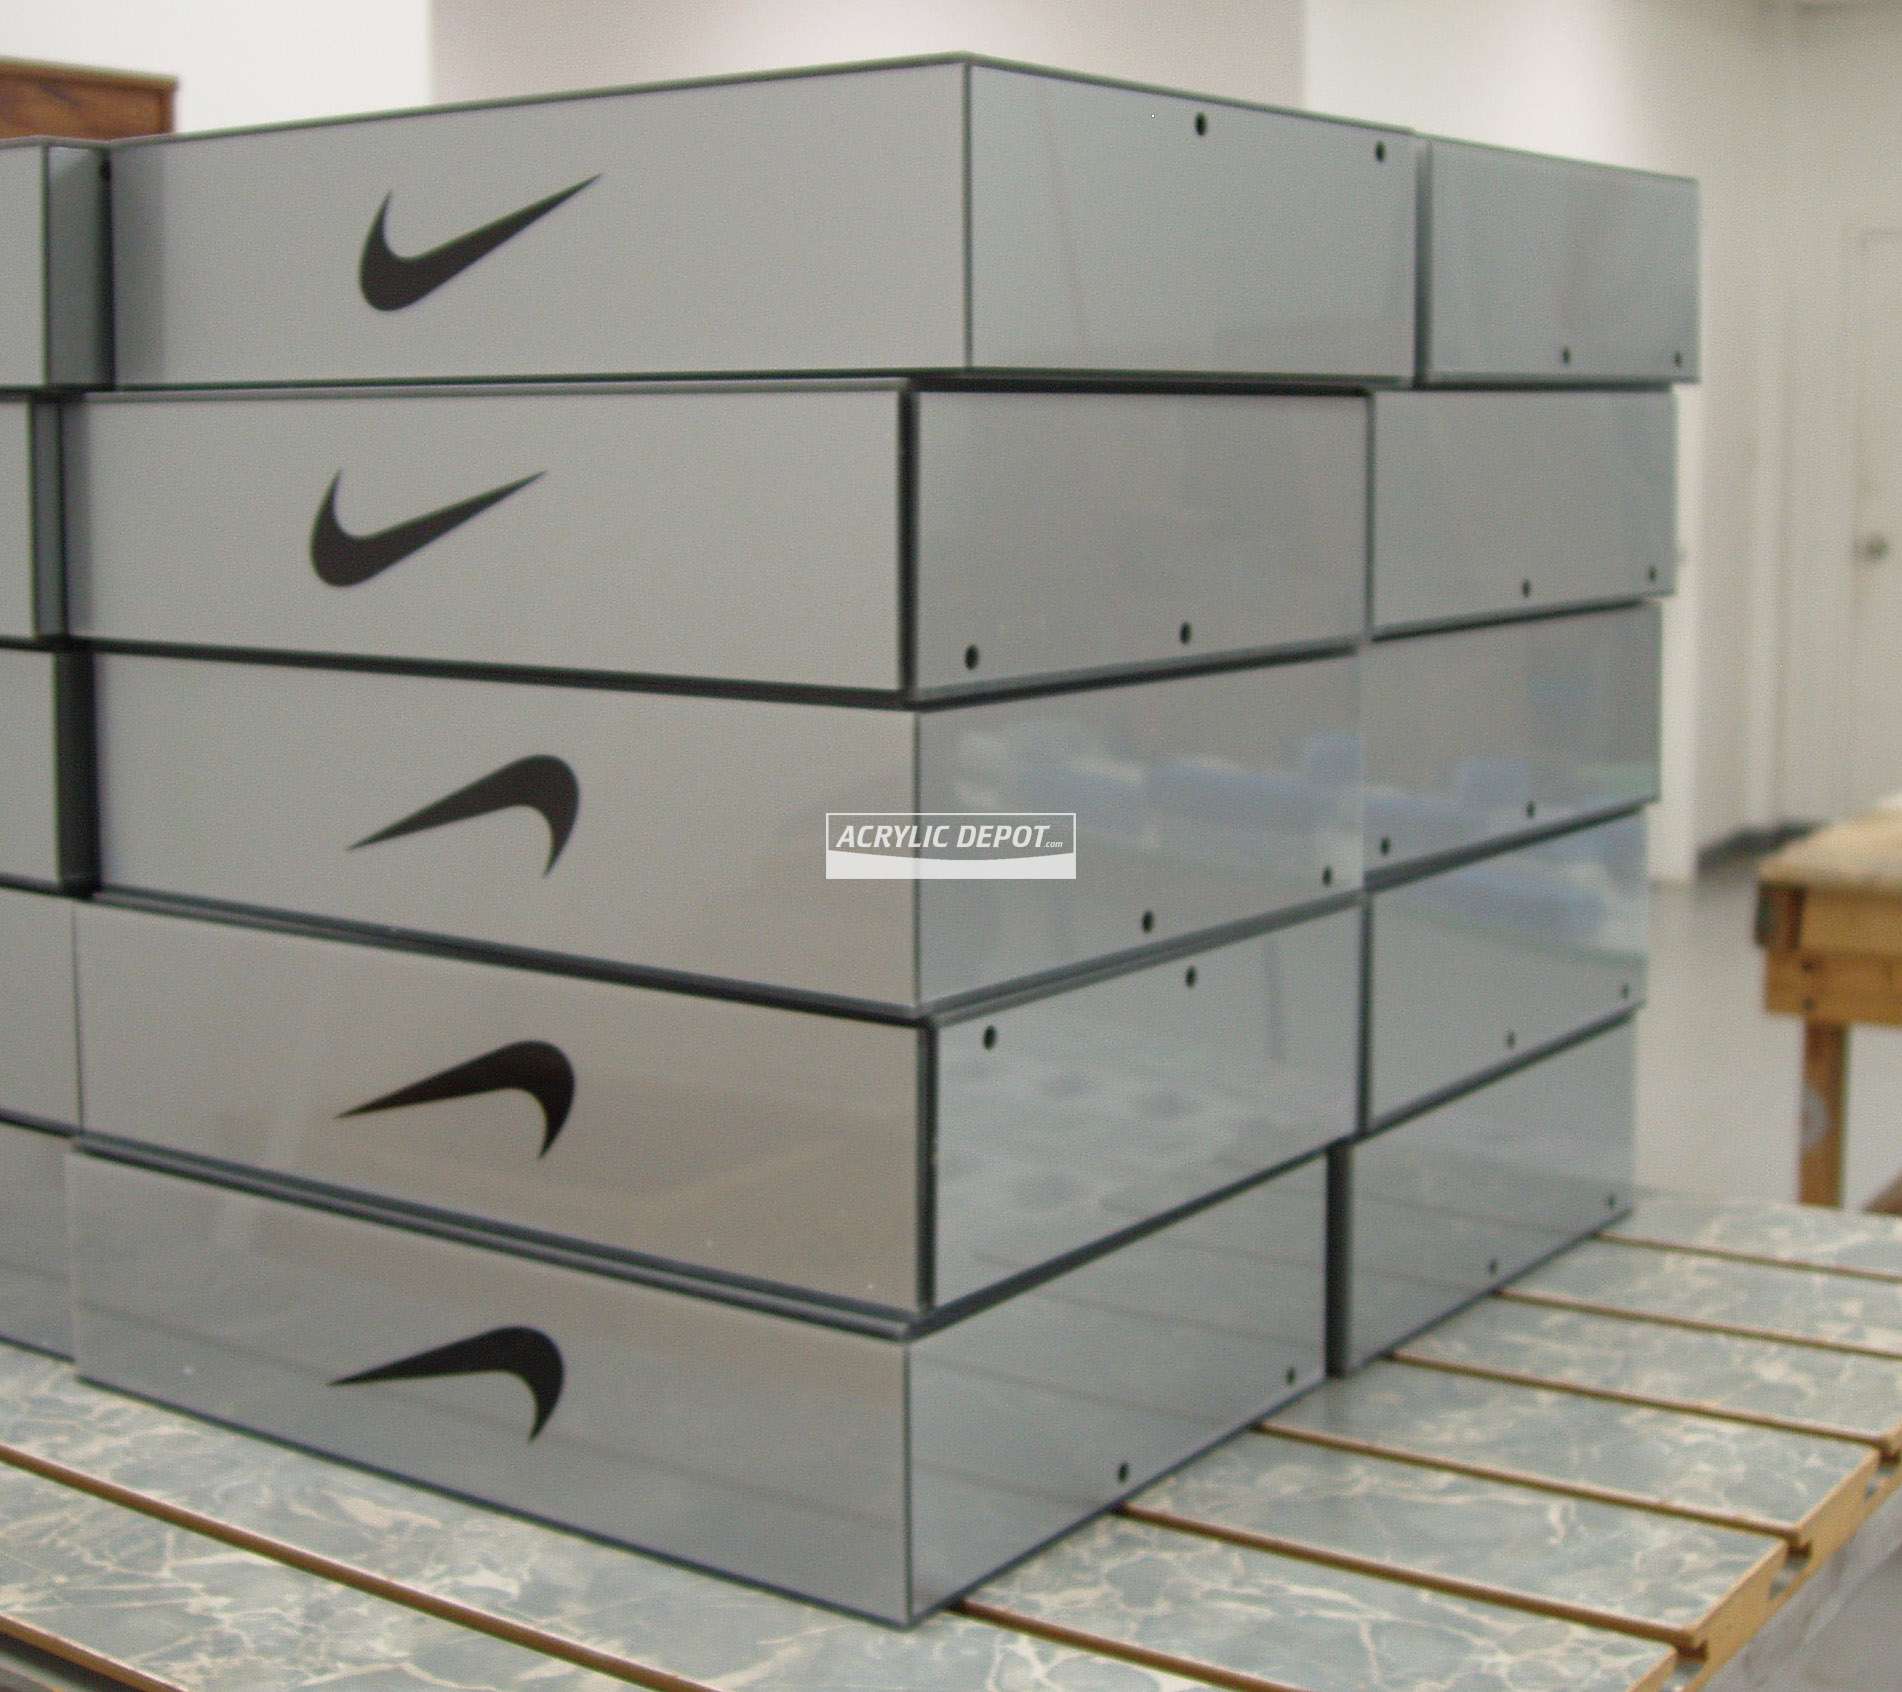 Nike Gift Box